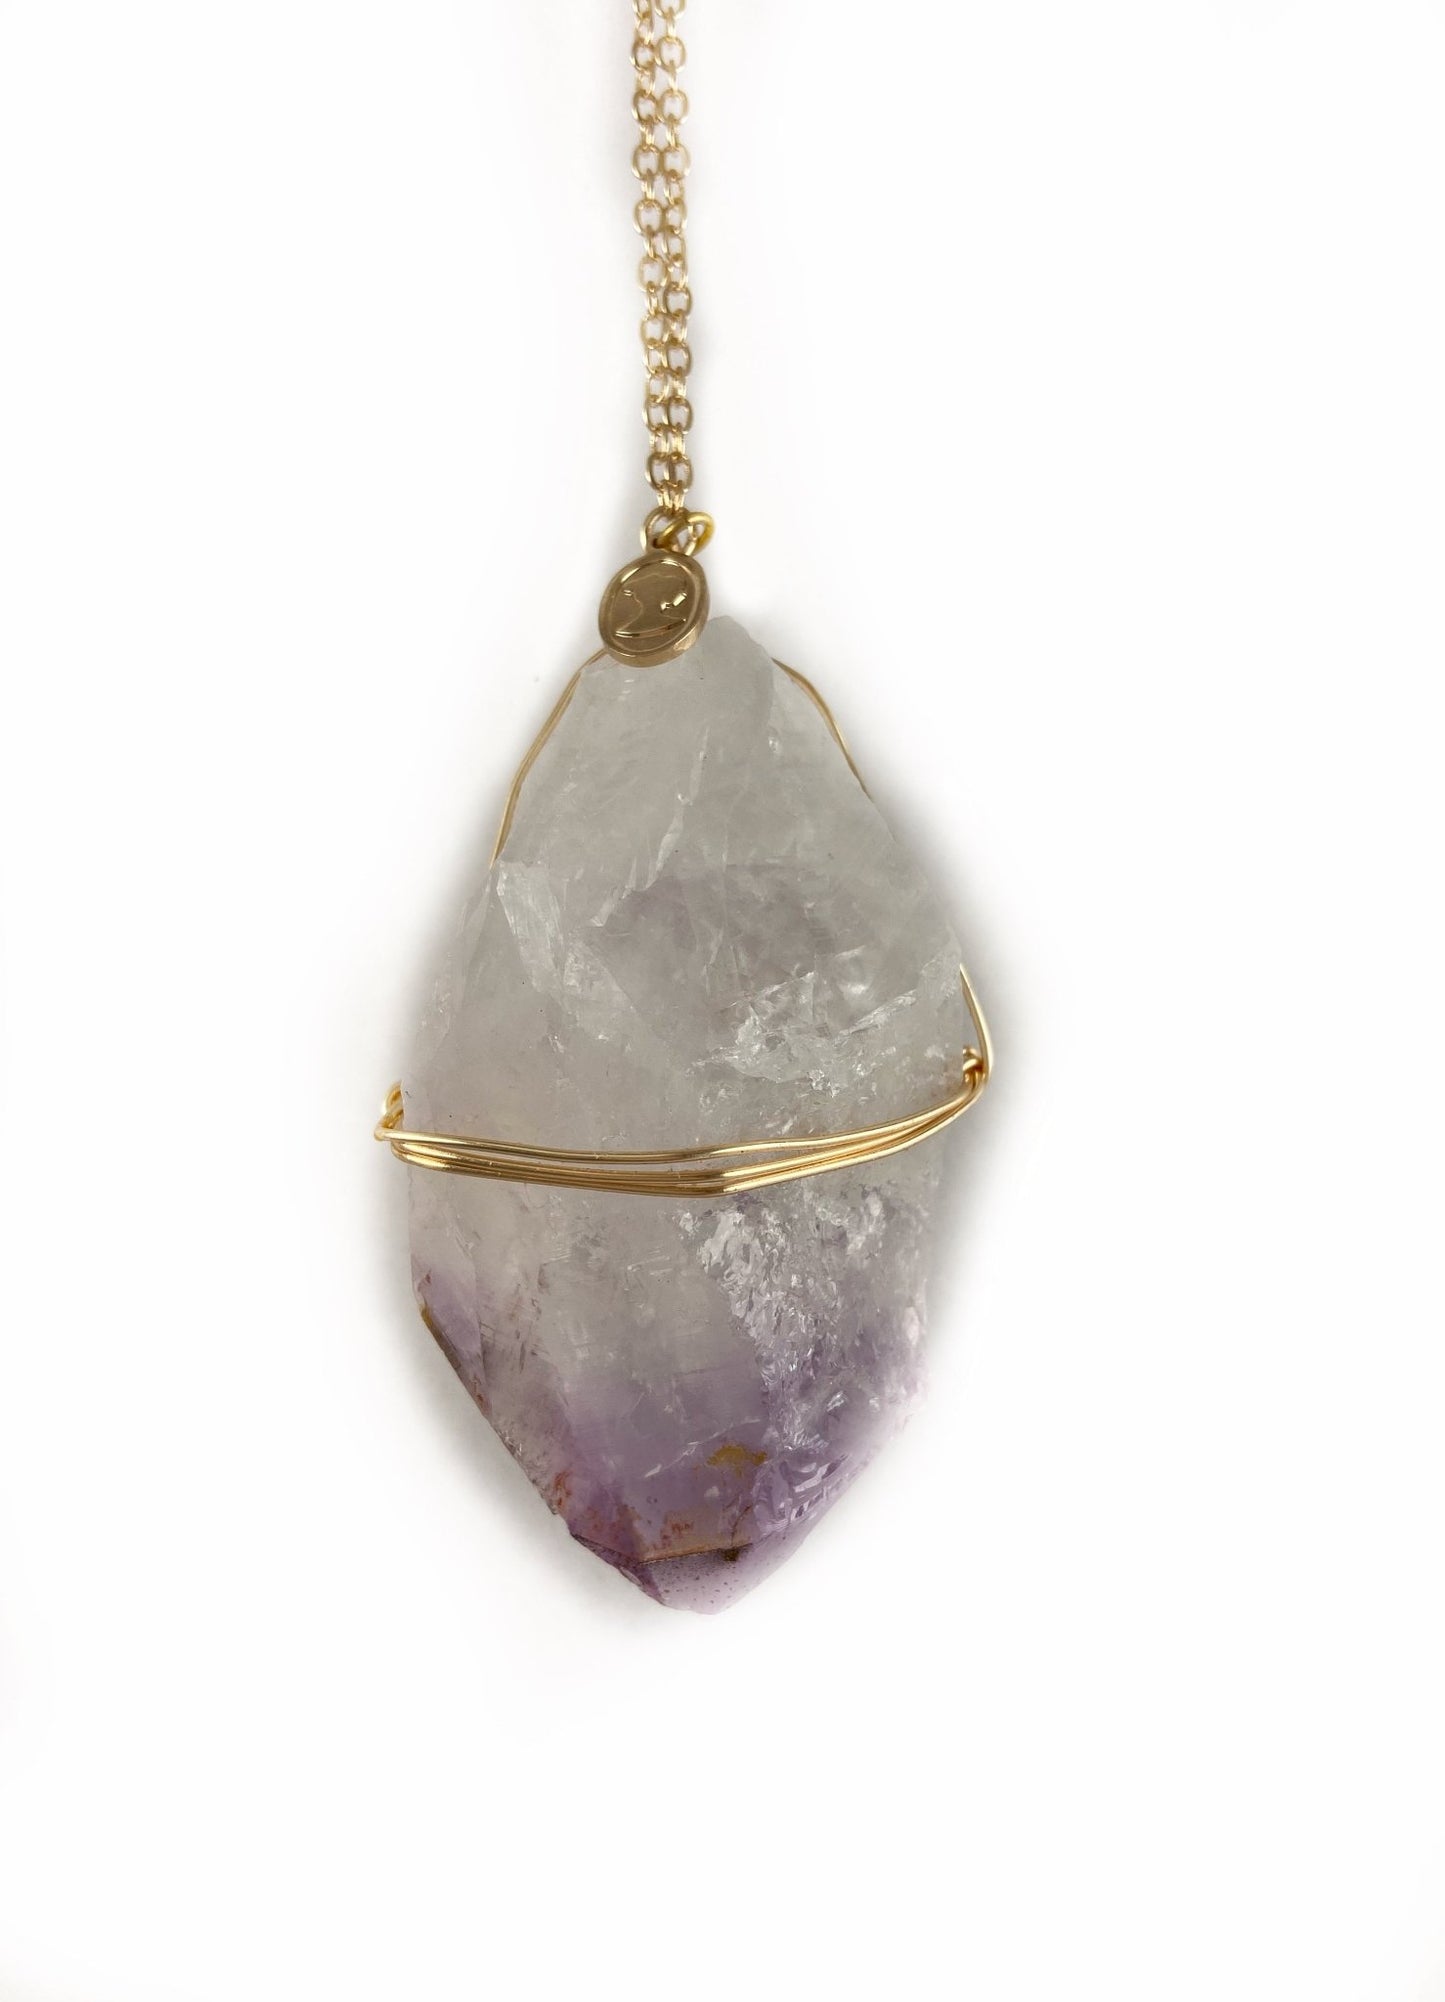 Healing Crystal Amethyst Ornament - Ariana Ost